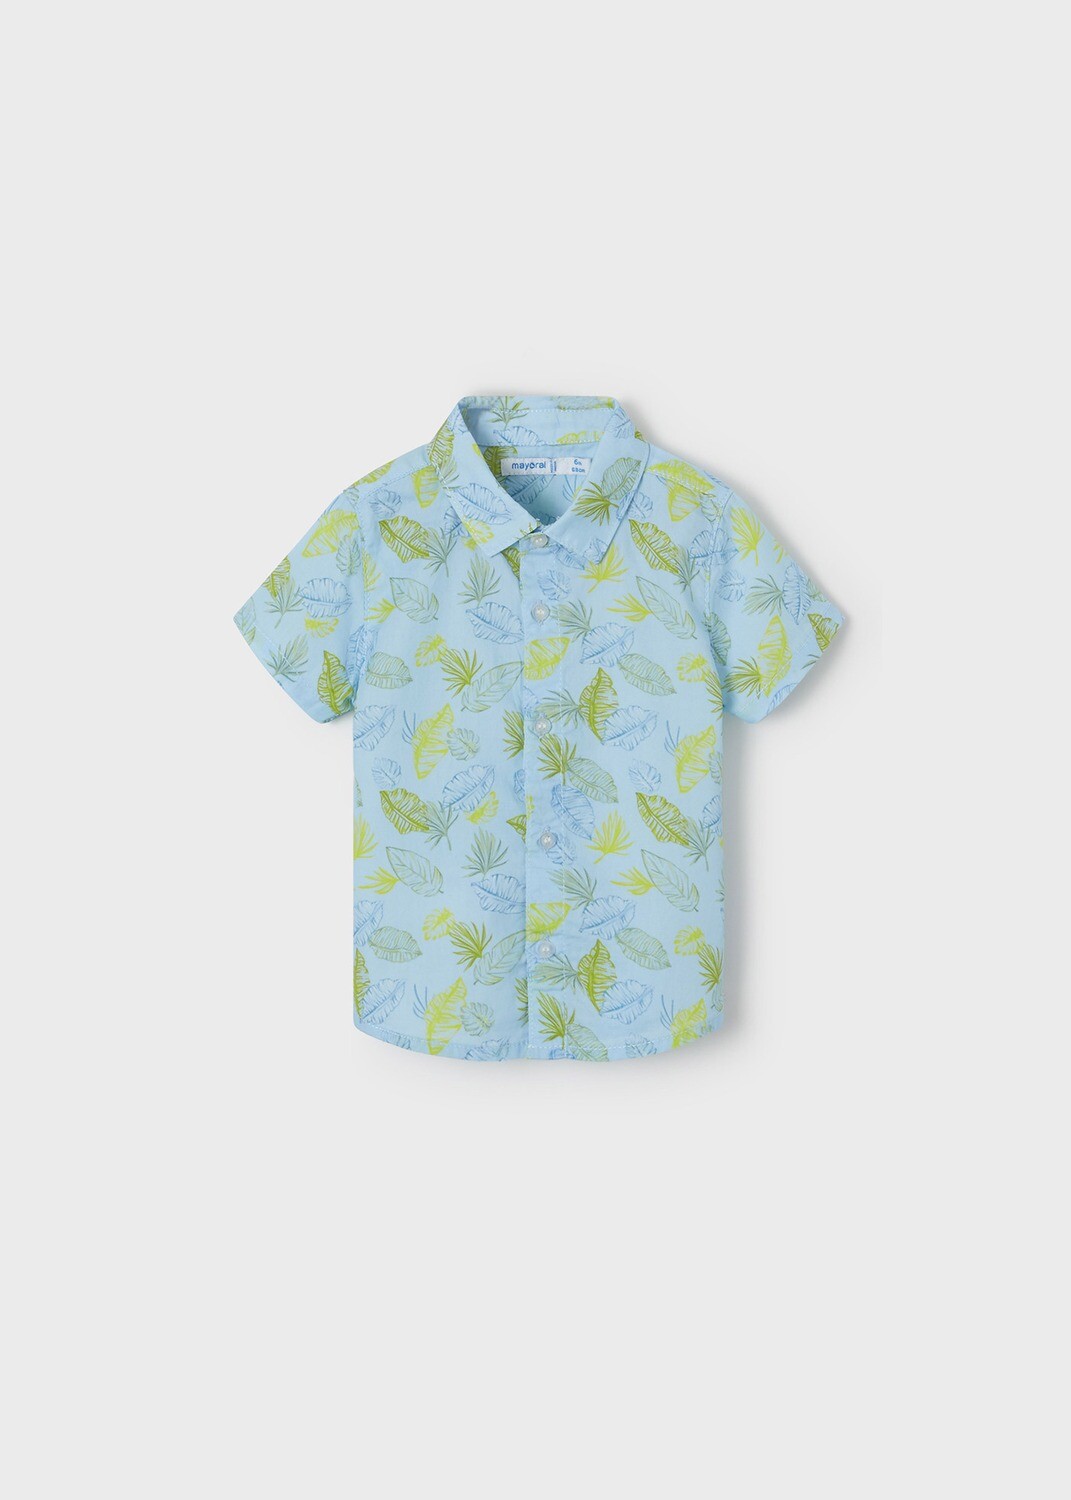 Shirt - Short Sleeve, Leaf Print